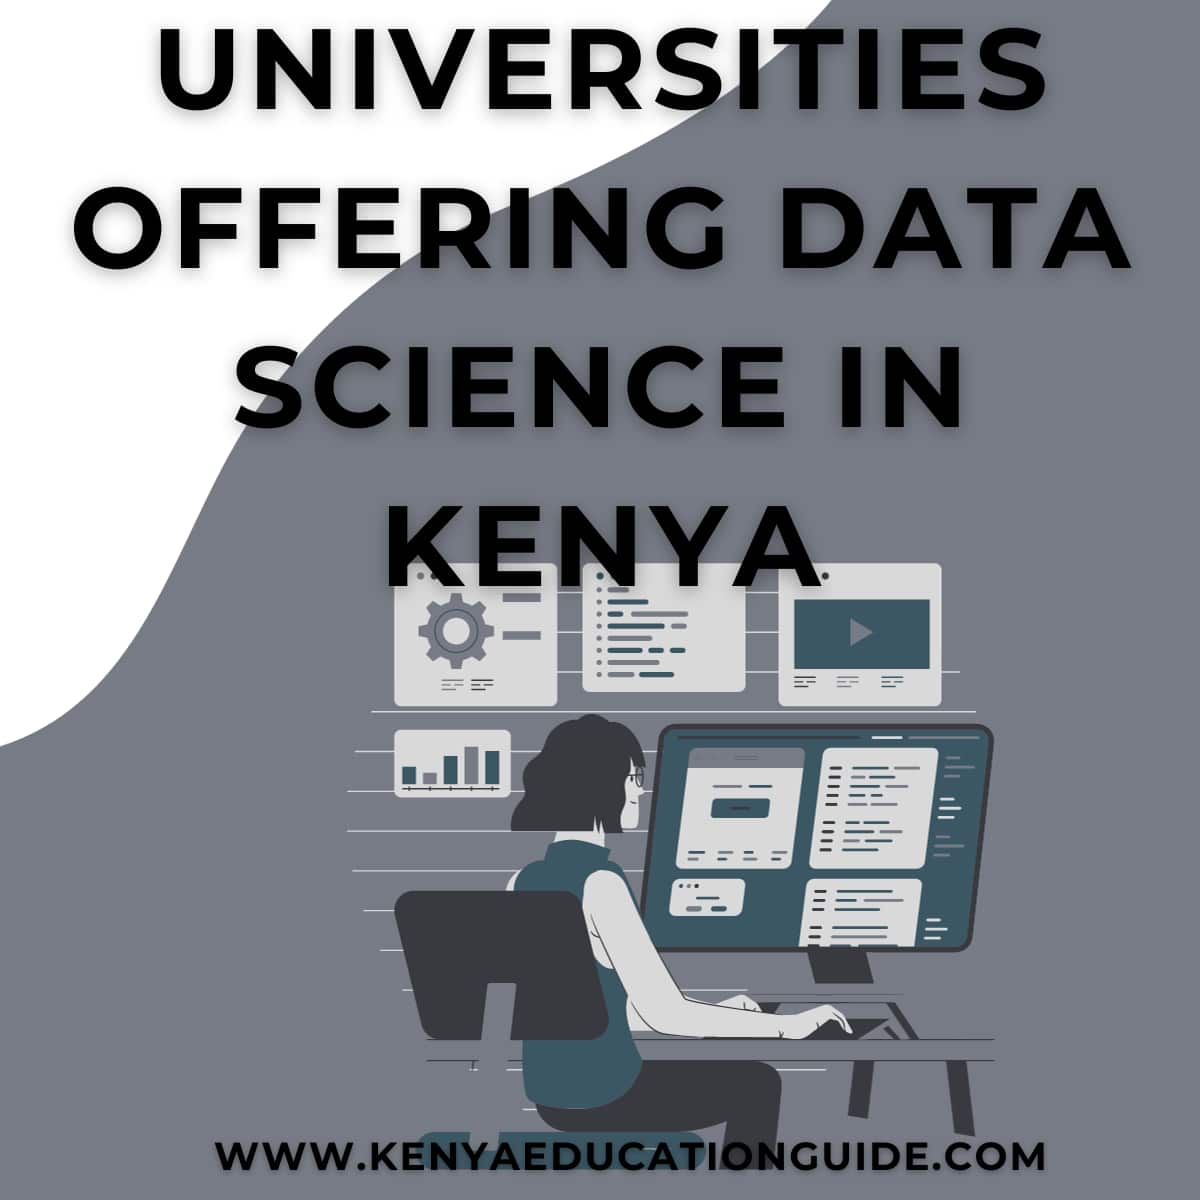 Universities Offering Data Science in Kenya